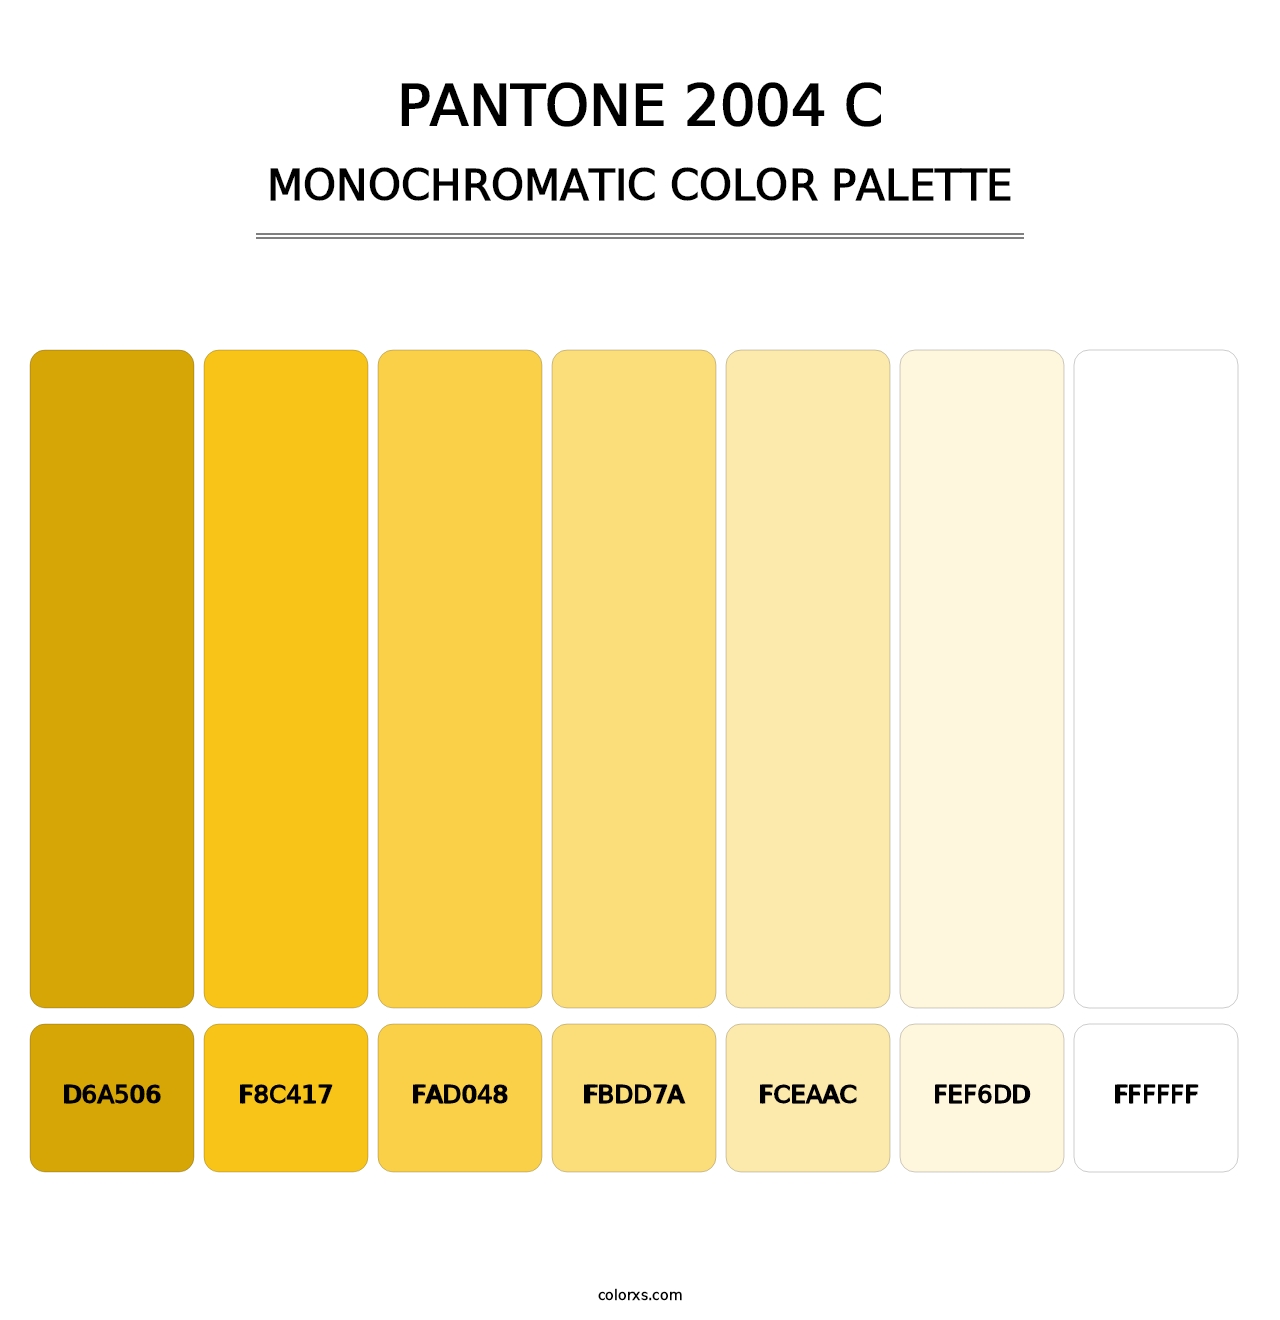 PANTONE 2004 C - Monochromatic Color Palette